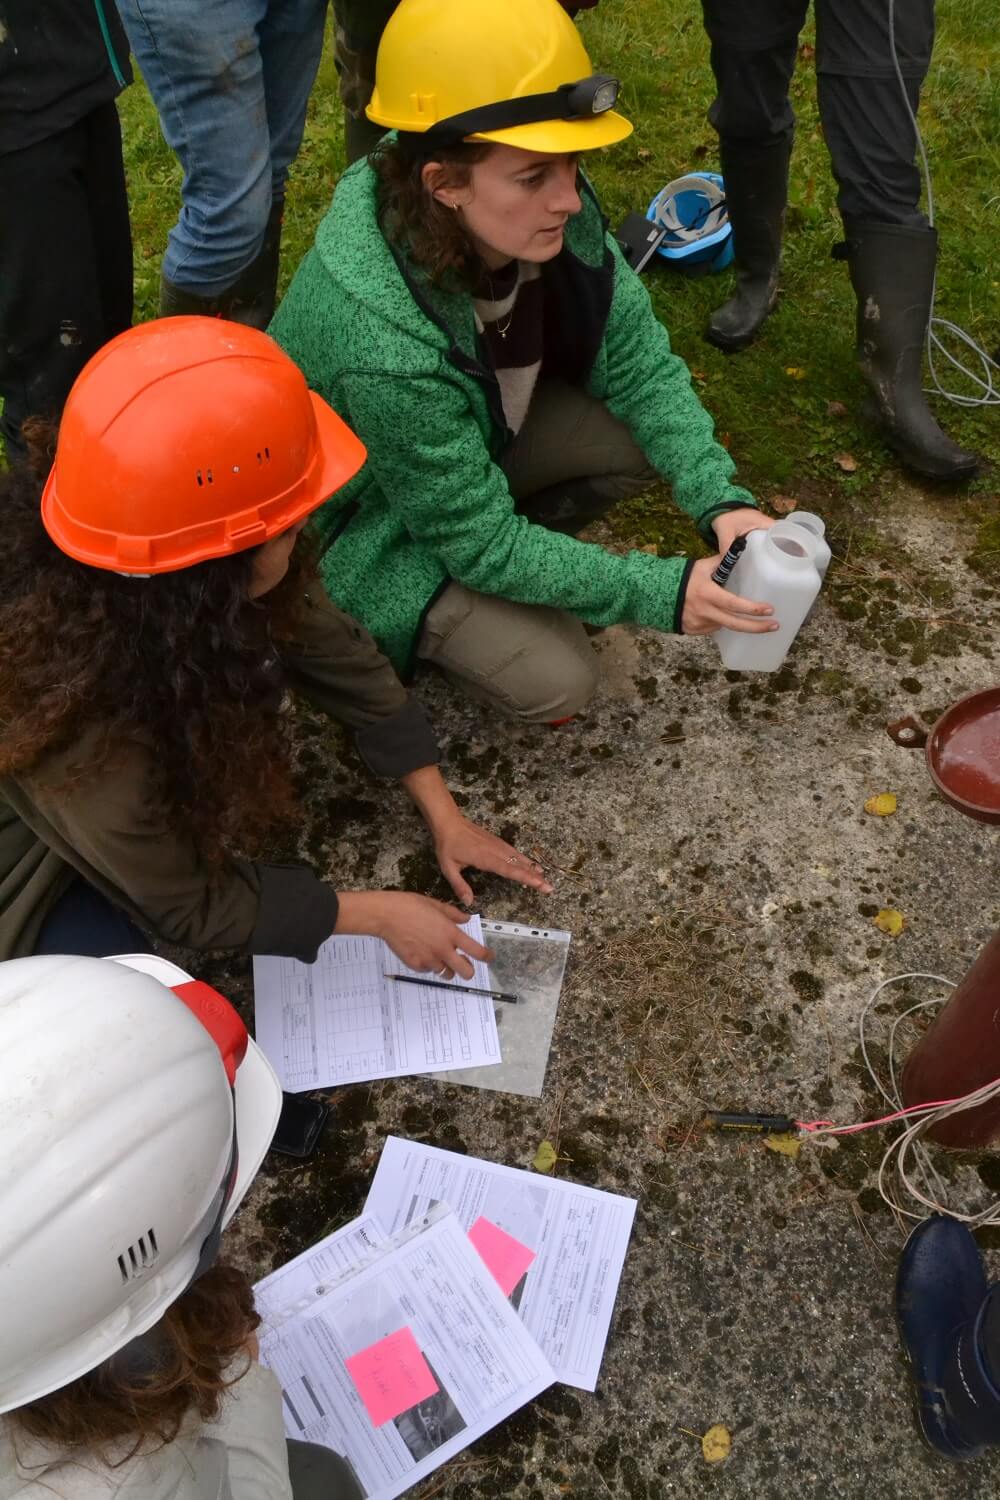 Etudiants du domaine d'approfondissement territoires, risques et aménagements en train de réaliser une études sur la qualité de l'eau à Fécamp.